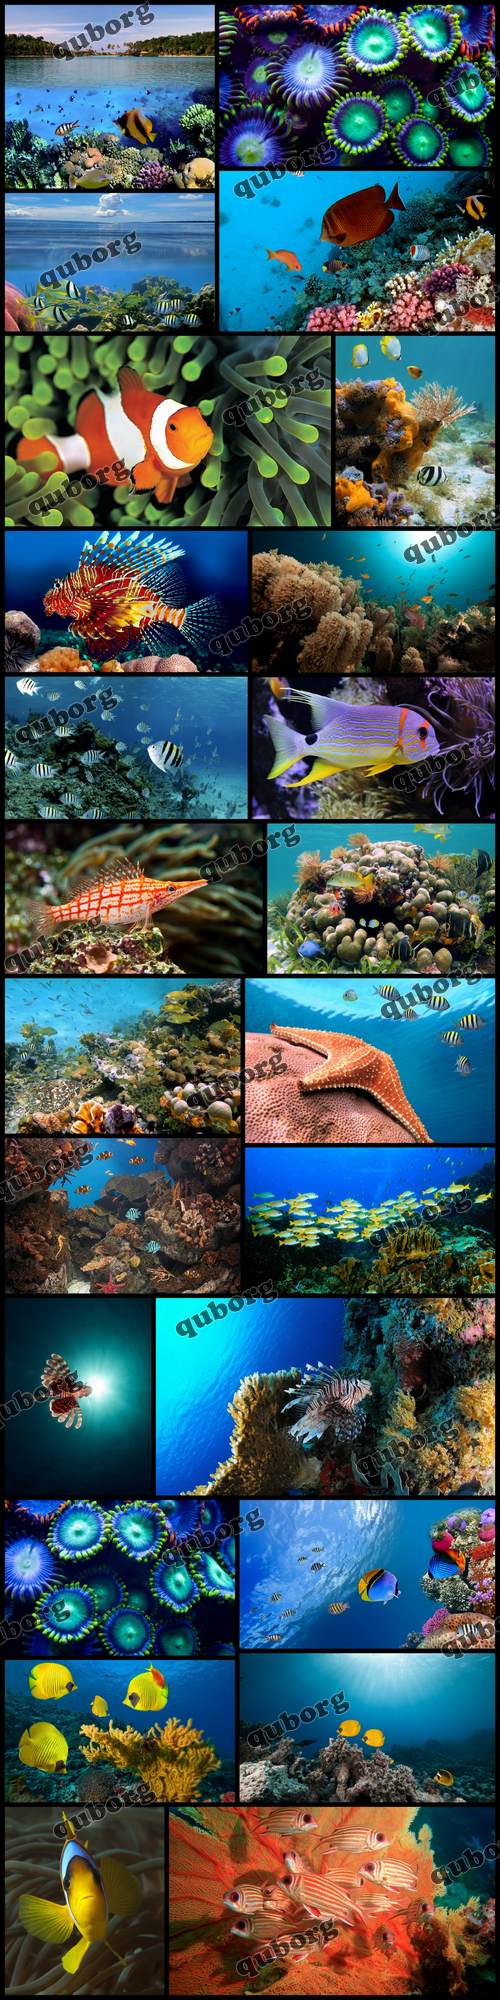 Stock Photos - Underwater